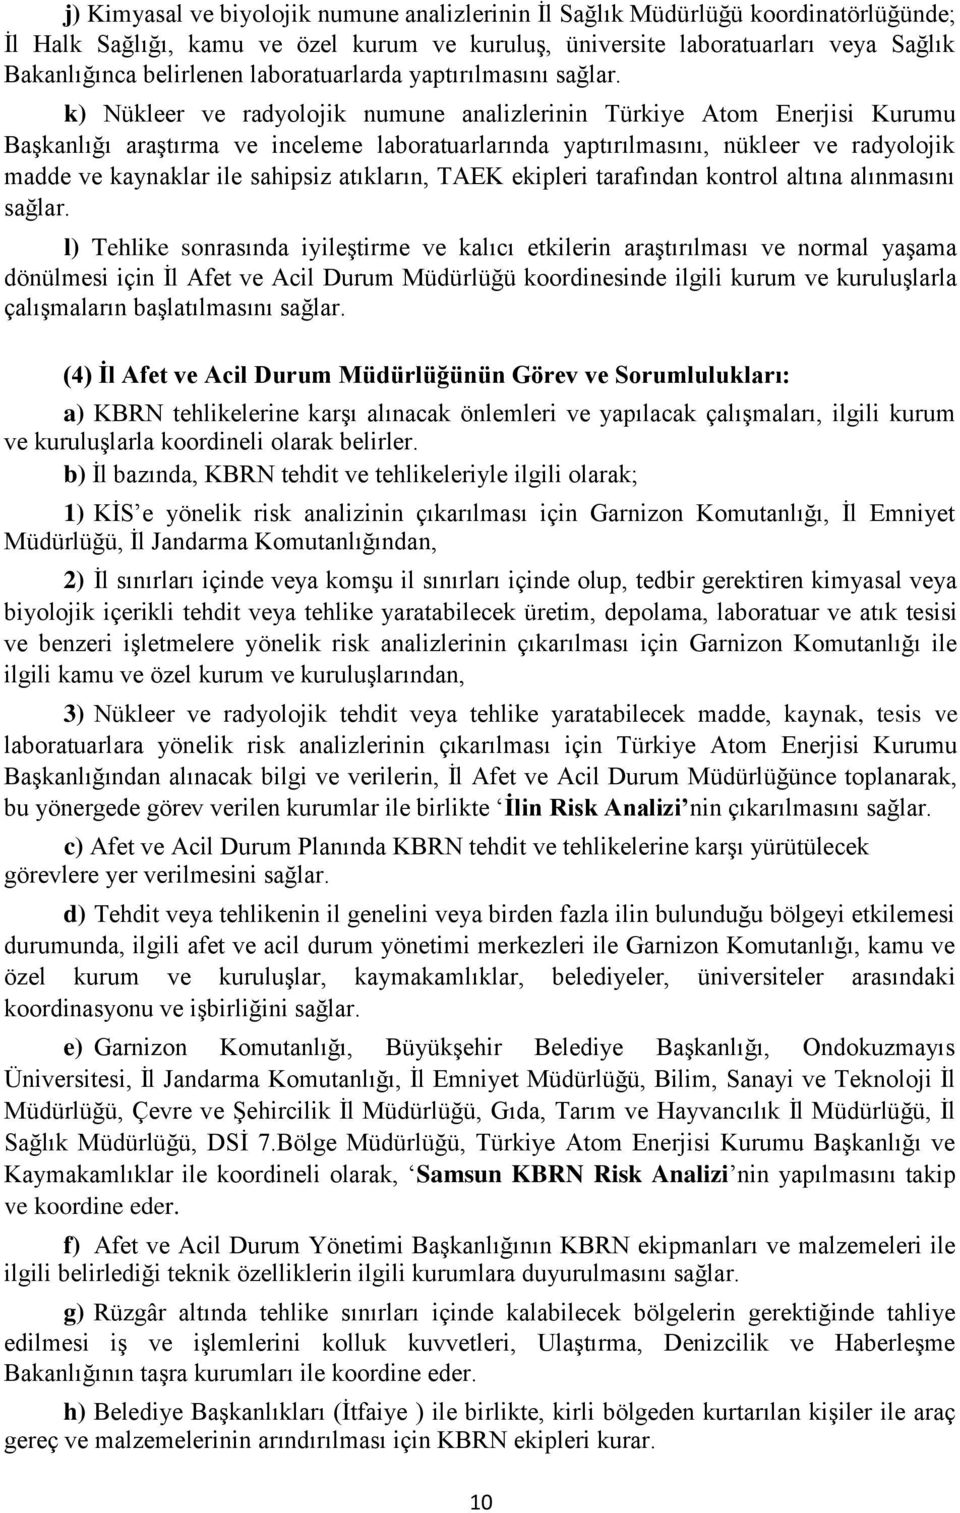 k) Nükleer ve radyolojik numune analizlerinin Türkiye Atom Enerjisi Kurumu Başkanlığı araştırma ve inceleme laboratuarlarında yaptırılmasını, nükleer ve radyolojik madde ve kaynaklar ile sahipsiz